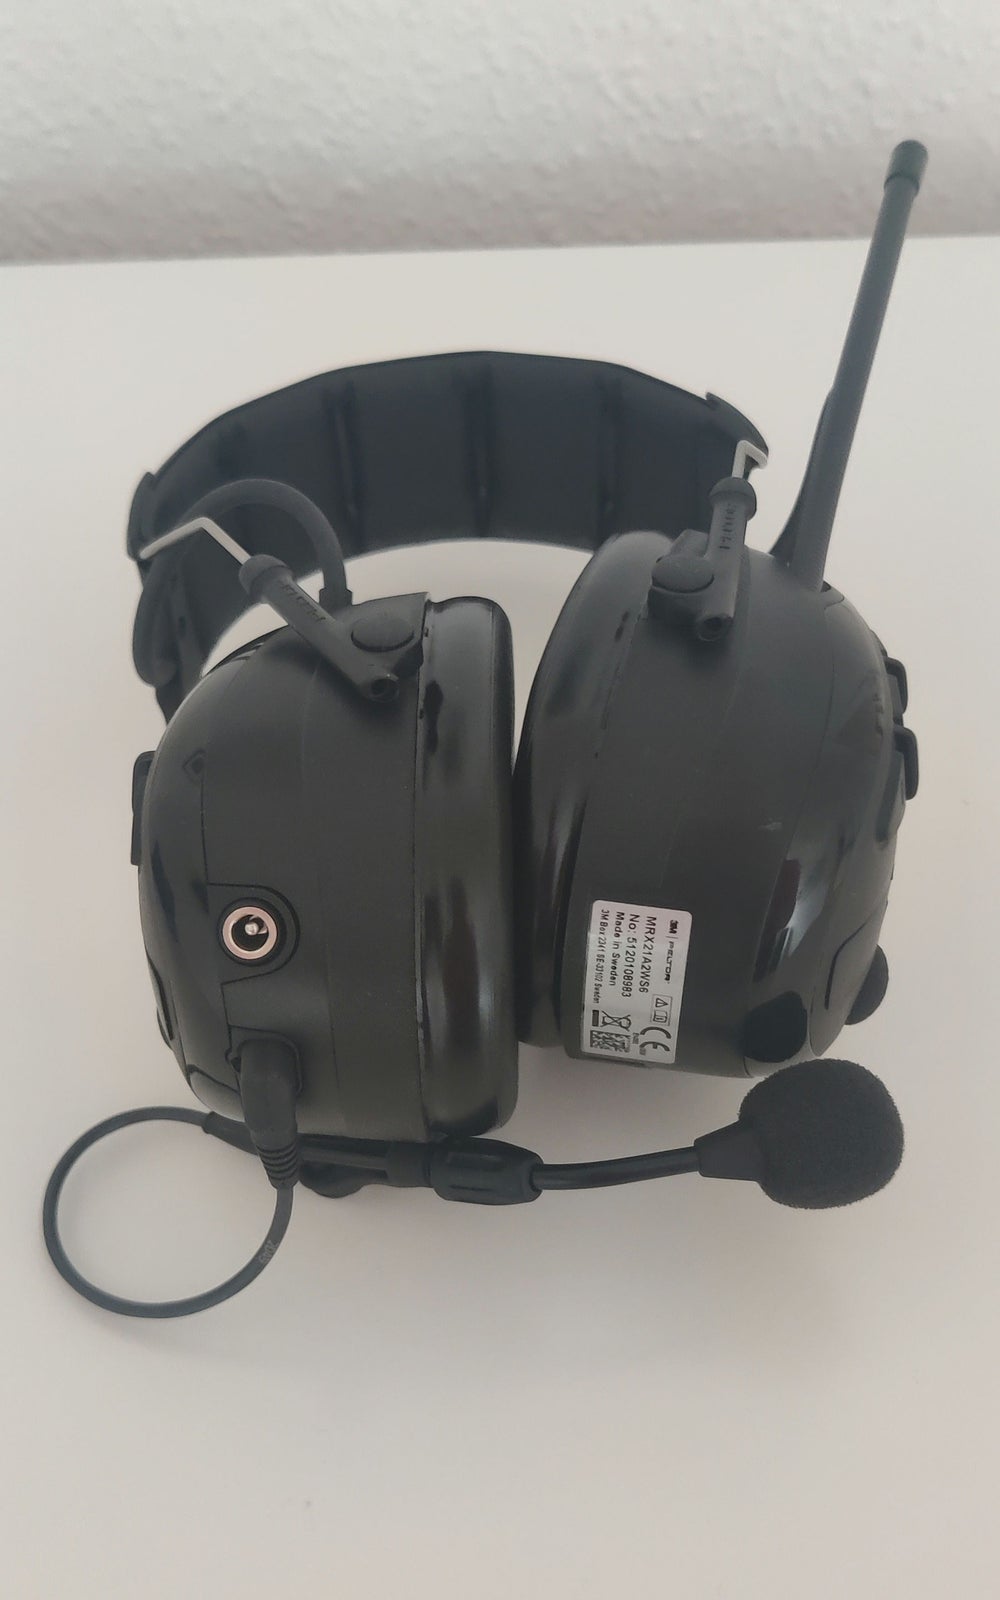 3M Peltor WS Alert XP headset